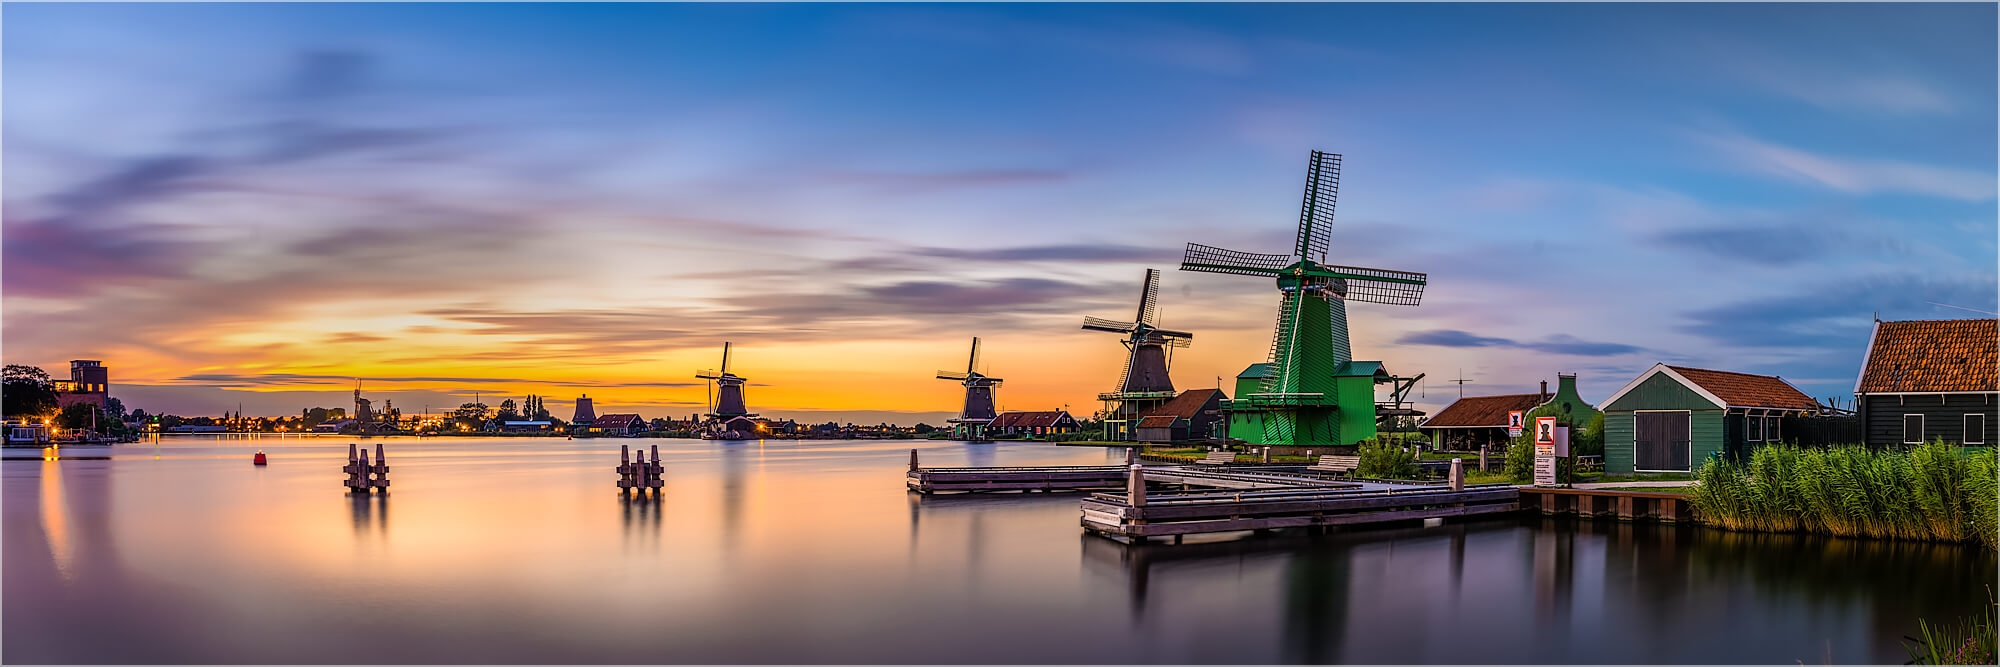 Panoramafoto Windmühlen von Zaanse Schans Holland